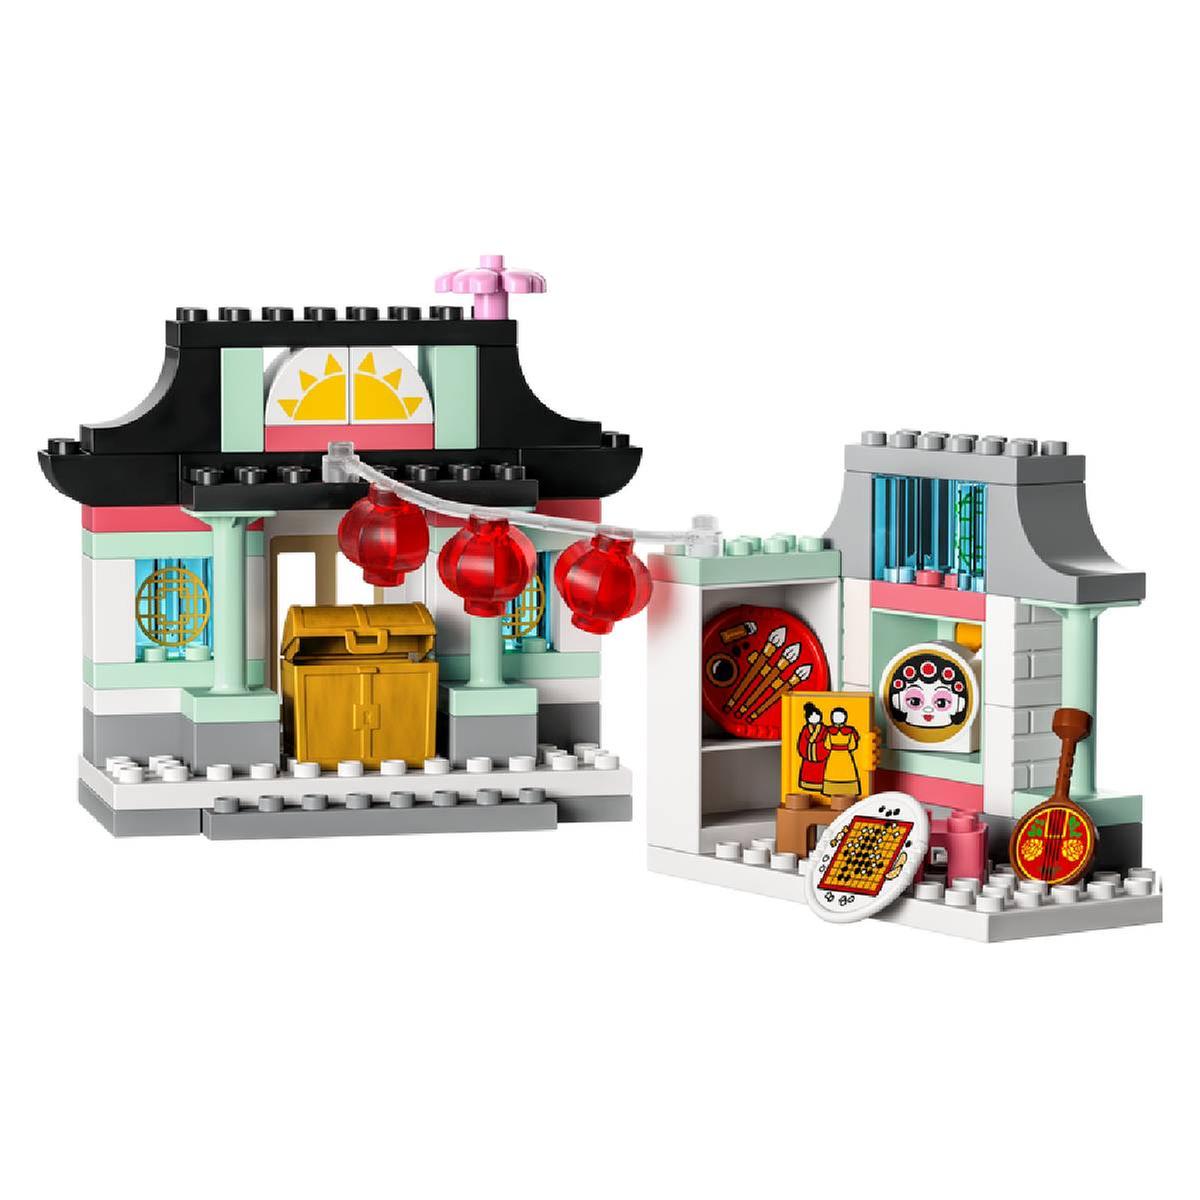 LEGO Duplo - Aprende sobre la cultura China - 10411 | Duplo Junior |  Toys"R"Us España